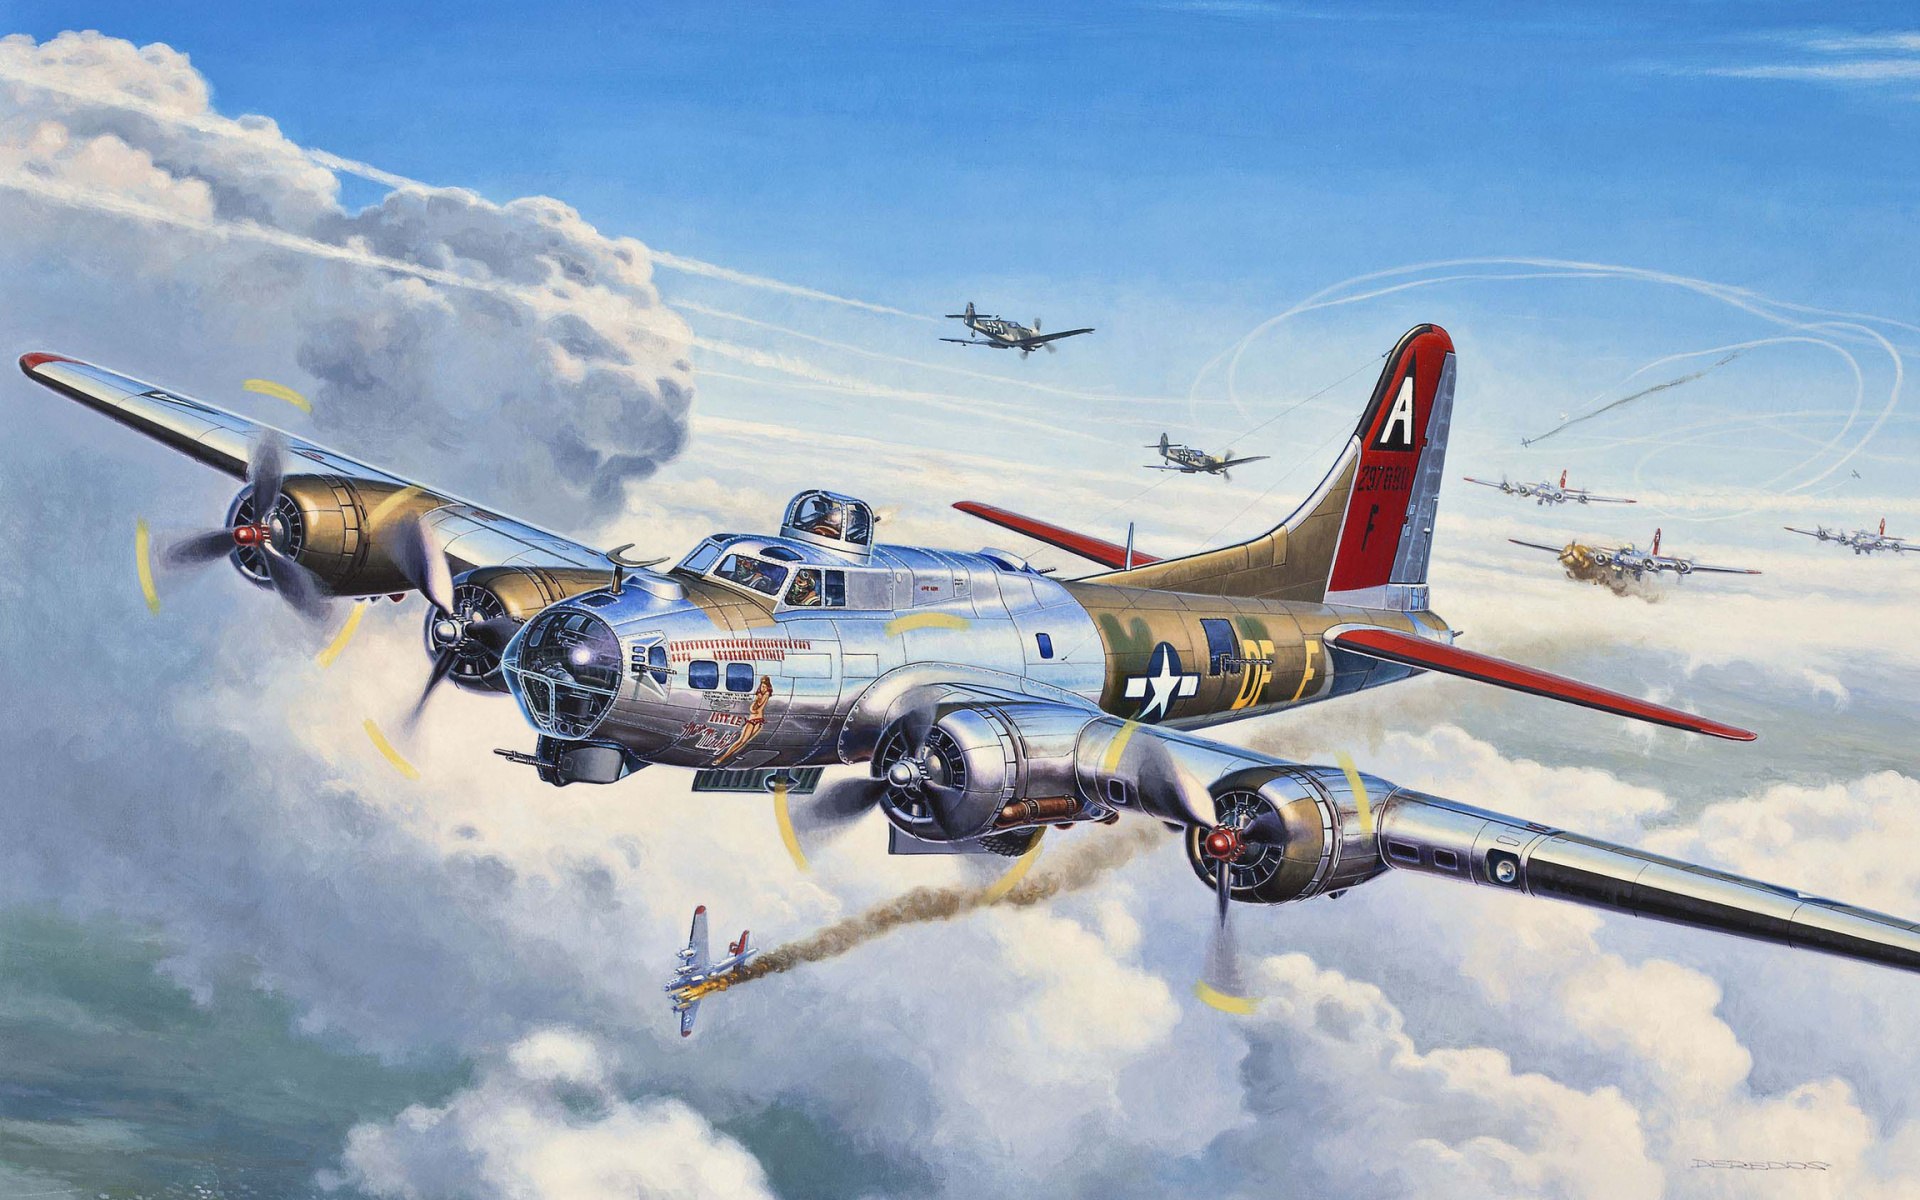 Propeller Driven Aircraft, Propeller, Douglas Sbd Dauntless, - 1 72 Flying Fortress , HD Wallpaper & Backgrounds